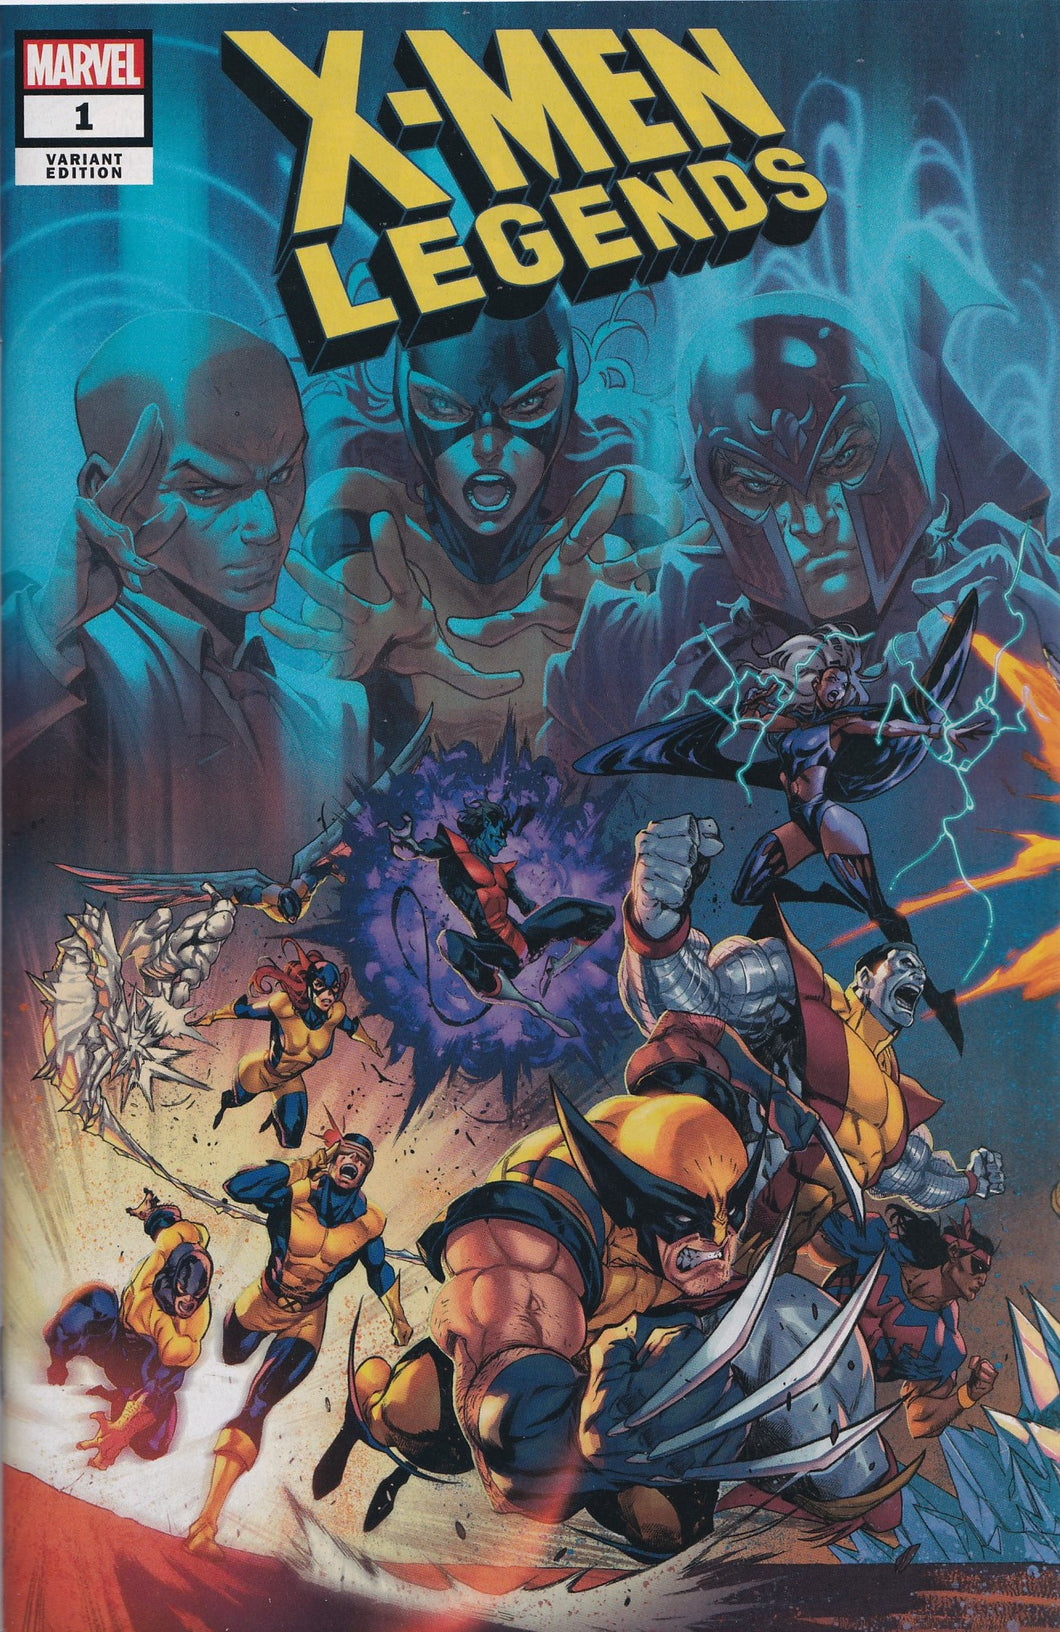 X-MEN LEGENDS #1 (COELLO VARIANT COVER) COMIC BOOK ~ Marvel Comics